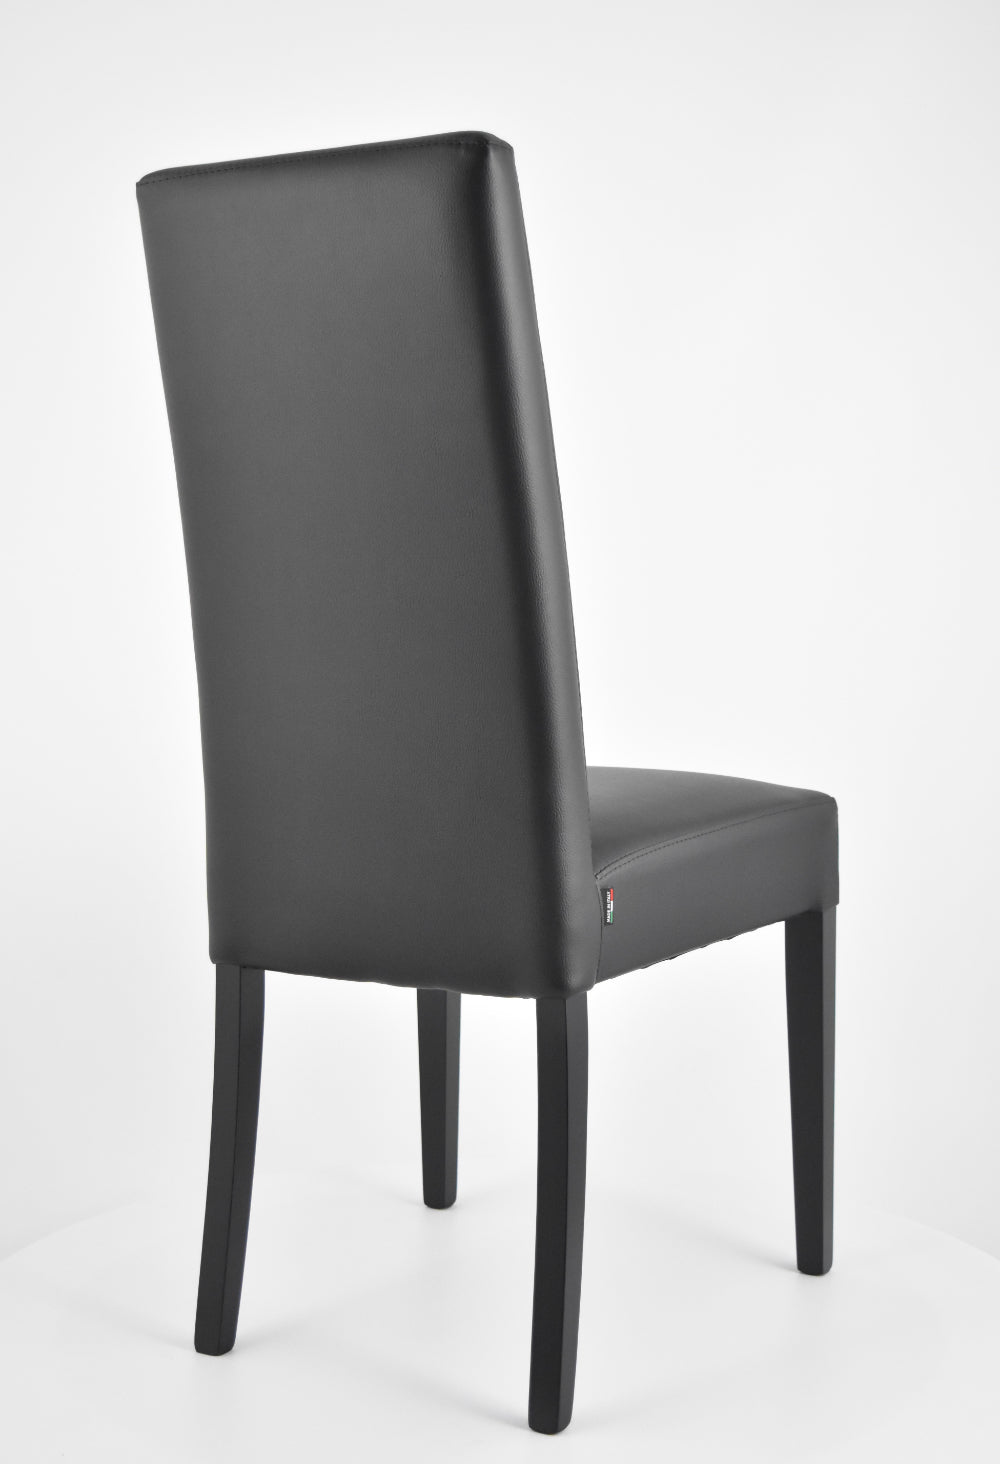 Tommychairs - Set 4 sillas de cocina, comedor, bar y restaurante Gloria, estructura en madera de haya y asiento tapizado en polipiel negro